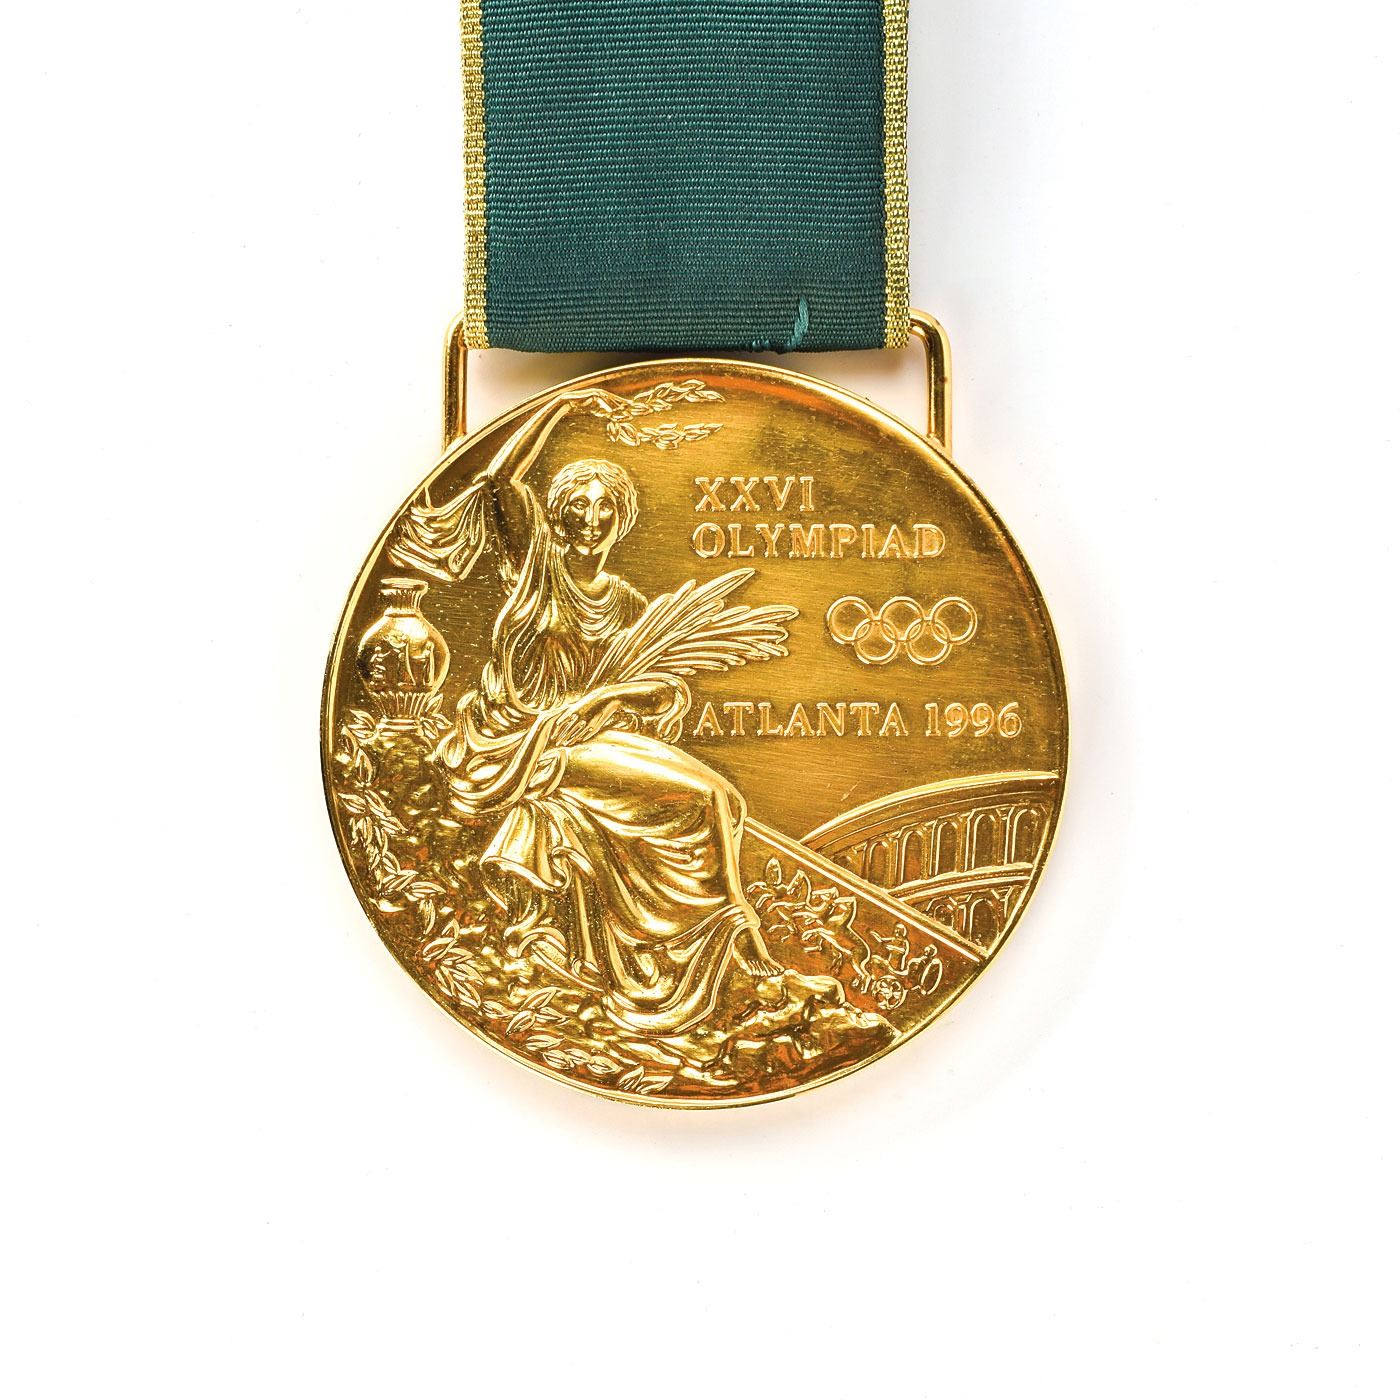 アトランタオリンピックで金メダルを獲得